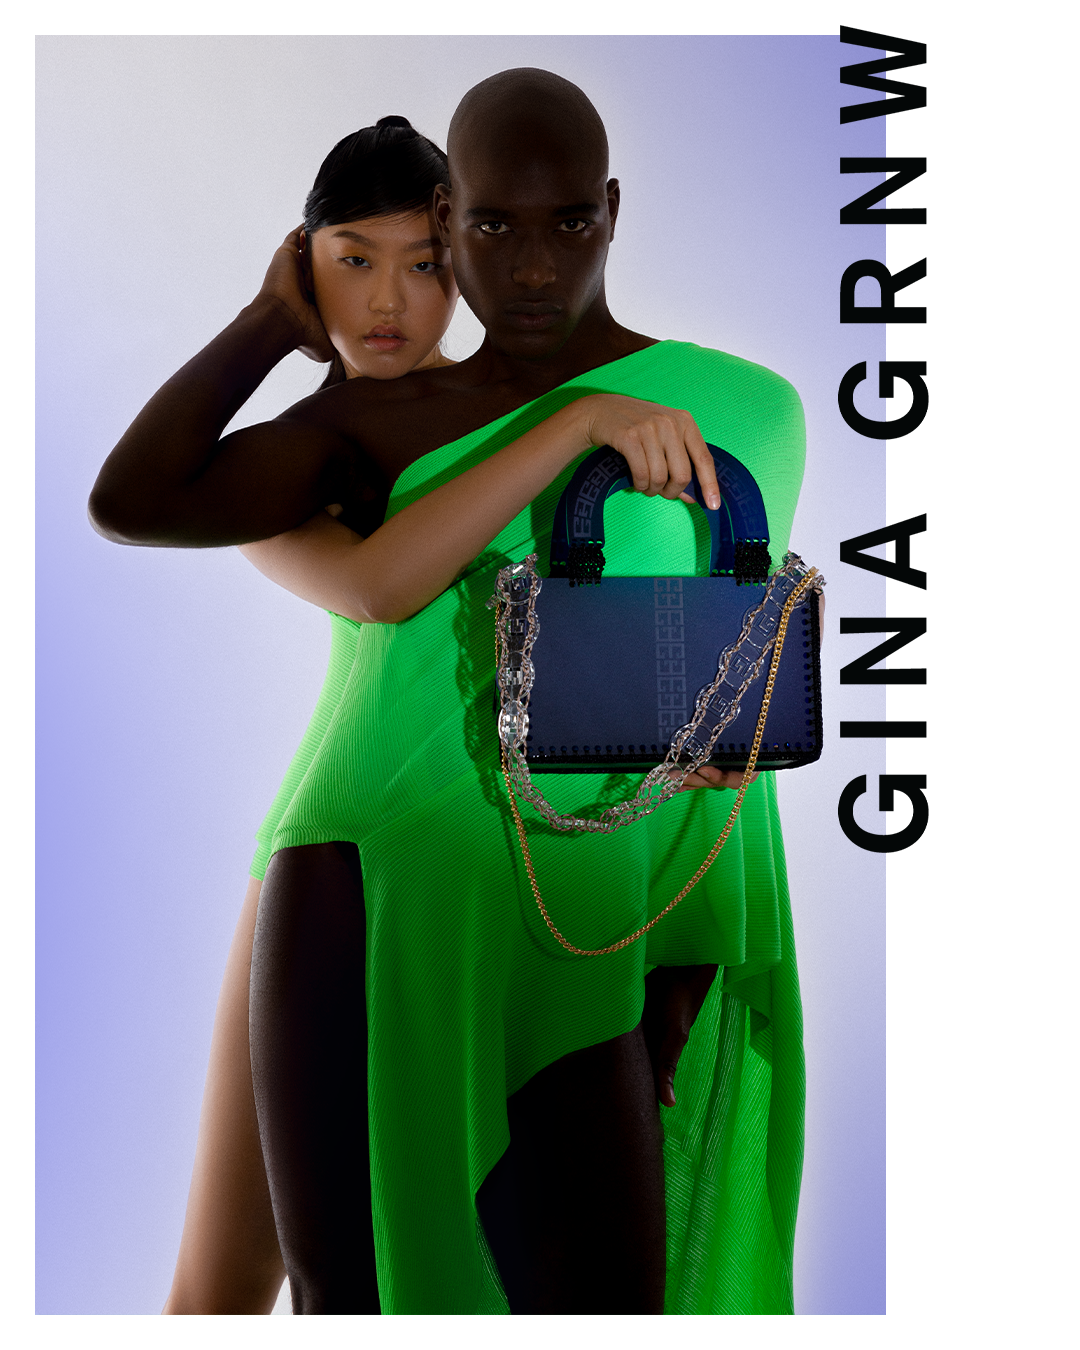 Bild zum Make up & Fashion Blog - neue-arbeit-von-claire-f--r-eine-kampagne-gina-grnw-ID14793-01.png?v=1664360951